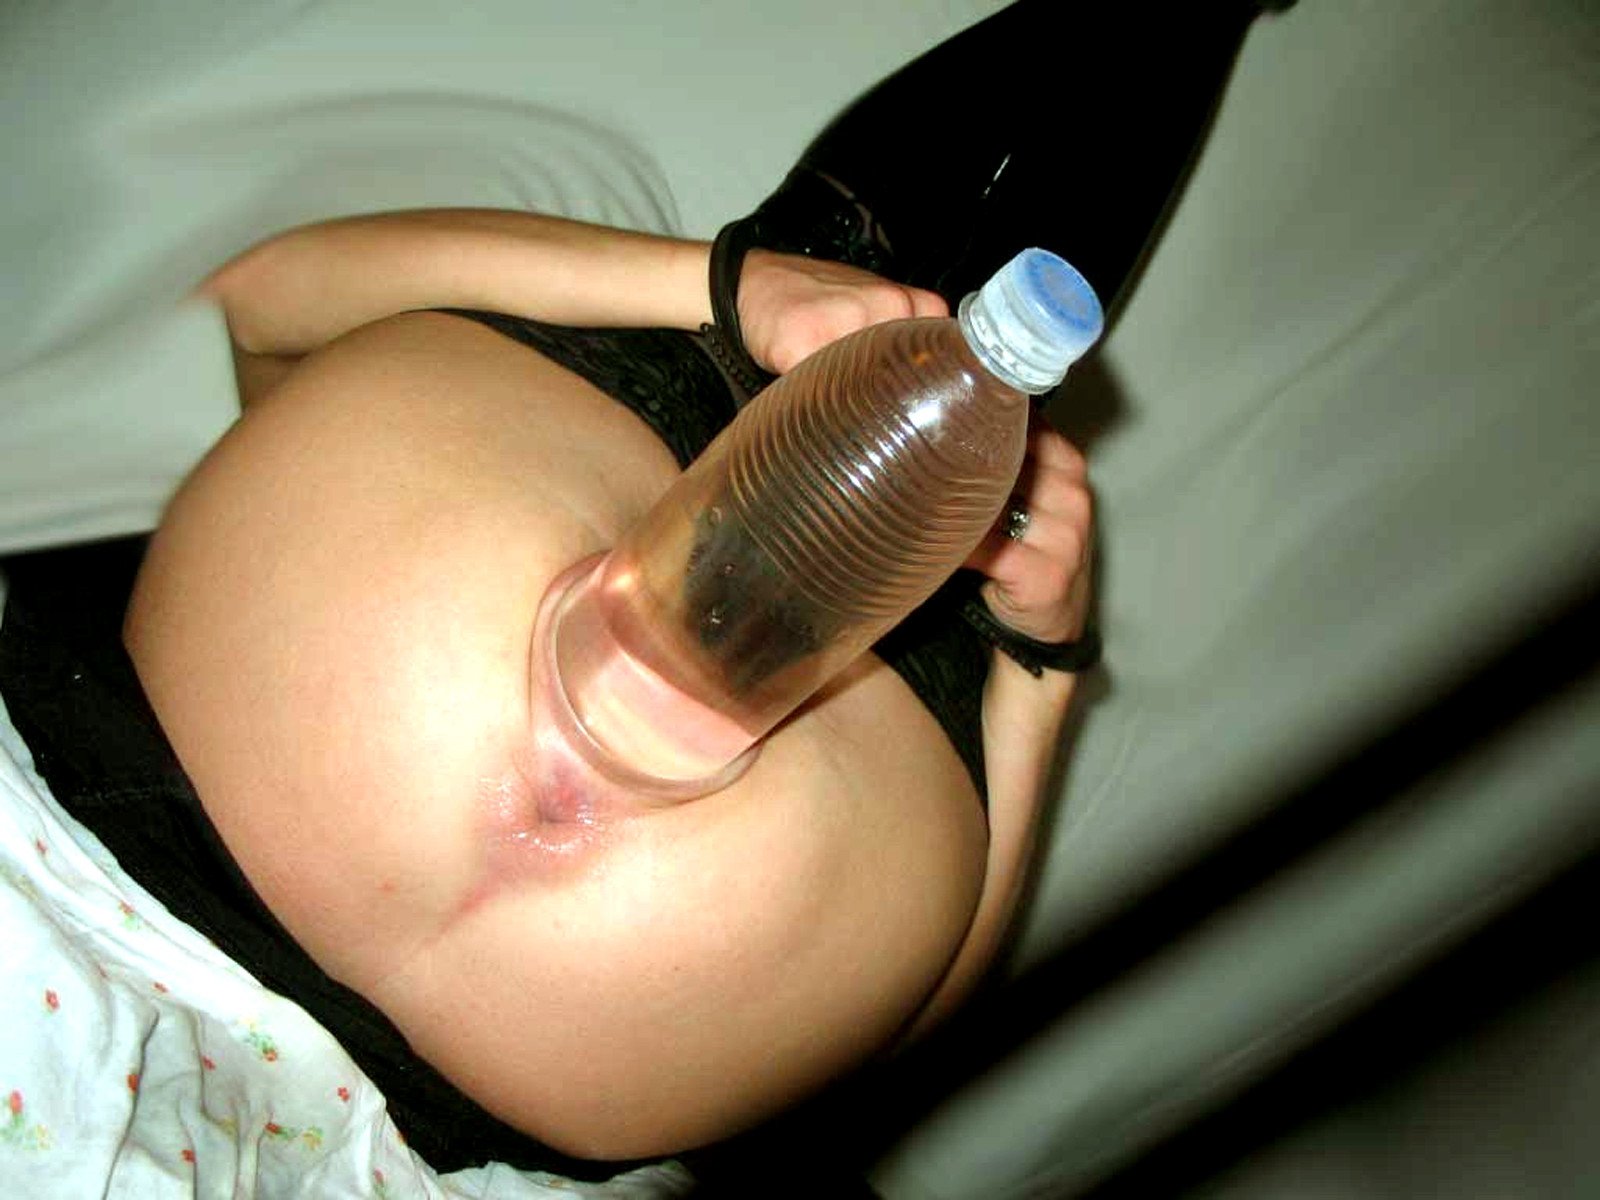 Пластиковая бутылка в вагине фото